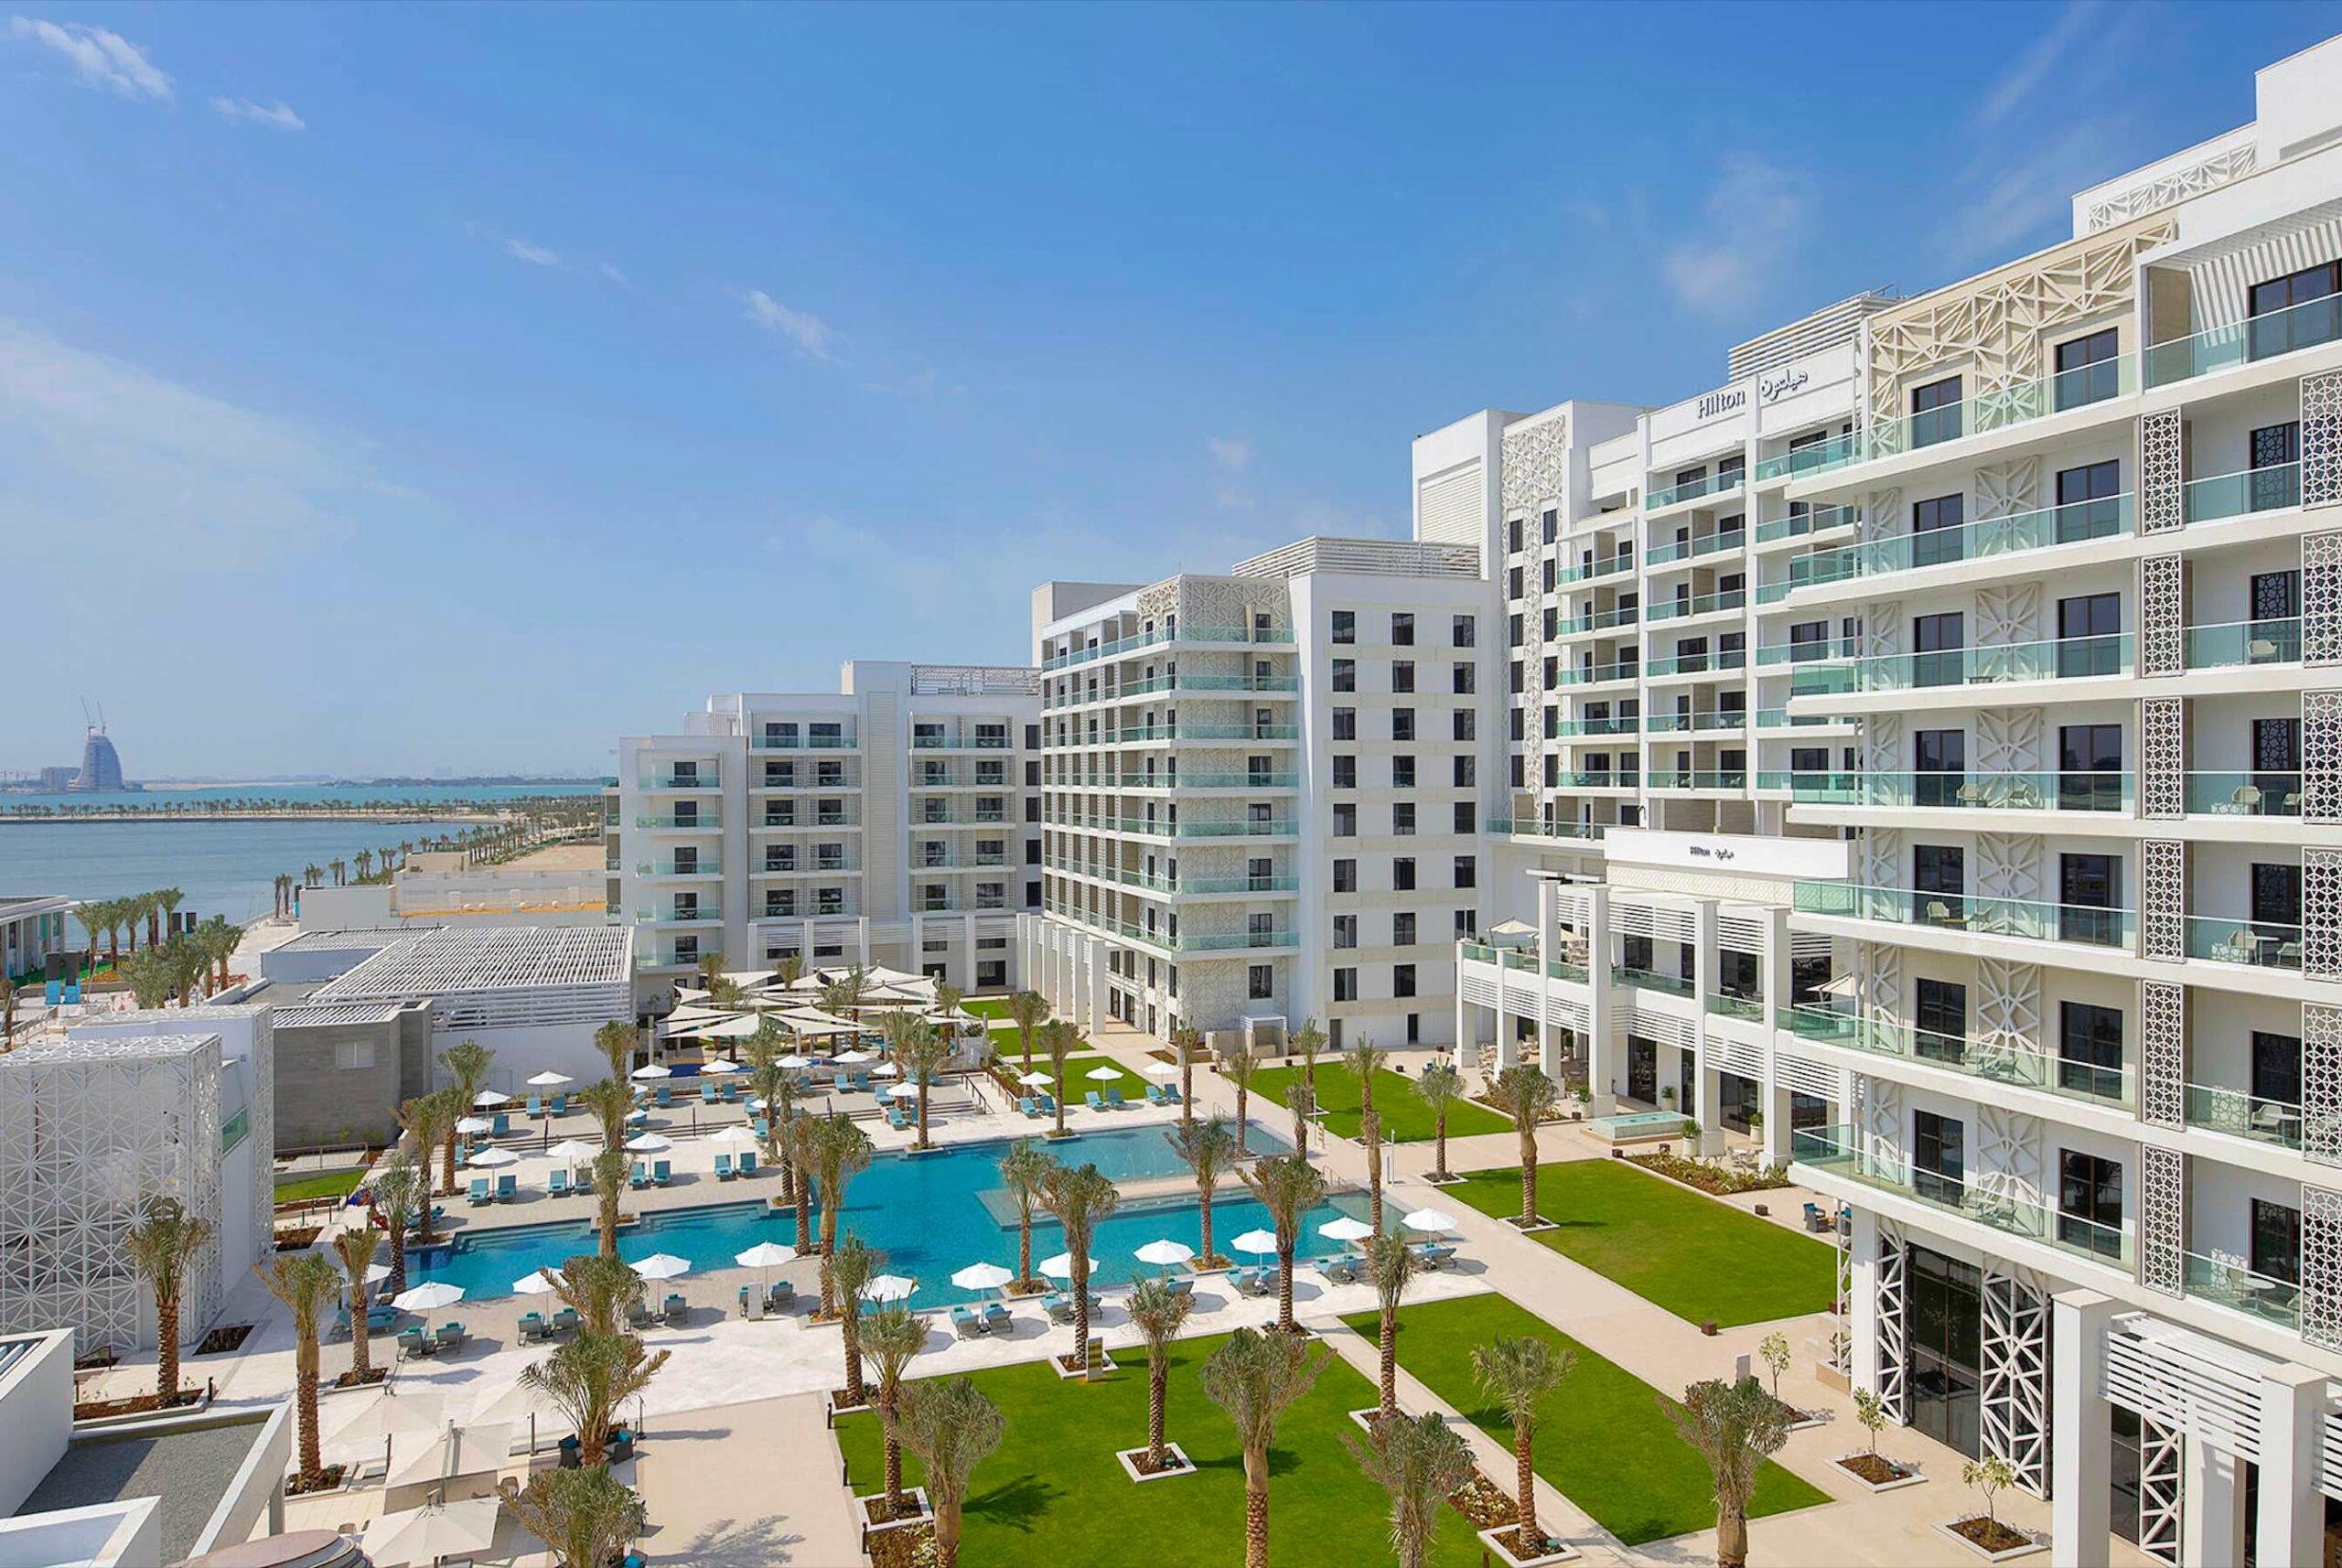 Staycation Spotlight: Hilton Abu Dhabi Yas Island